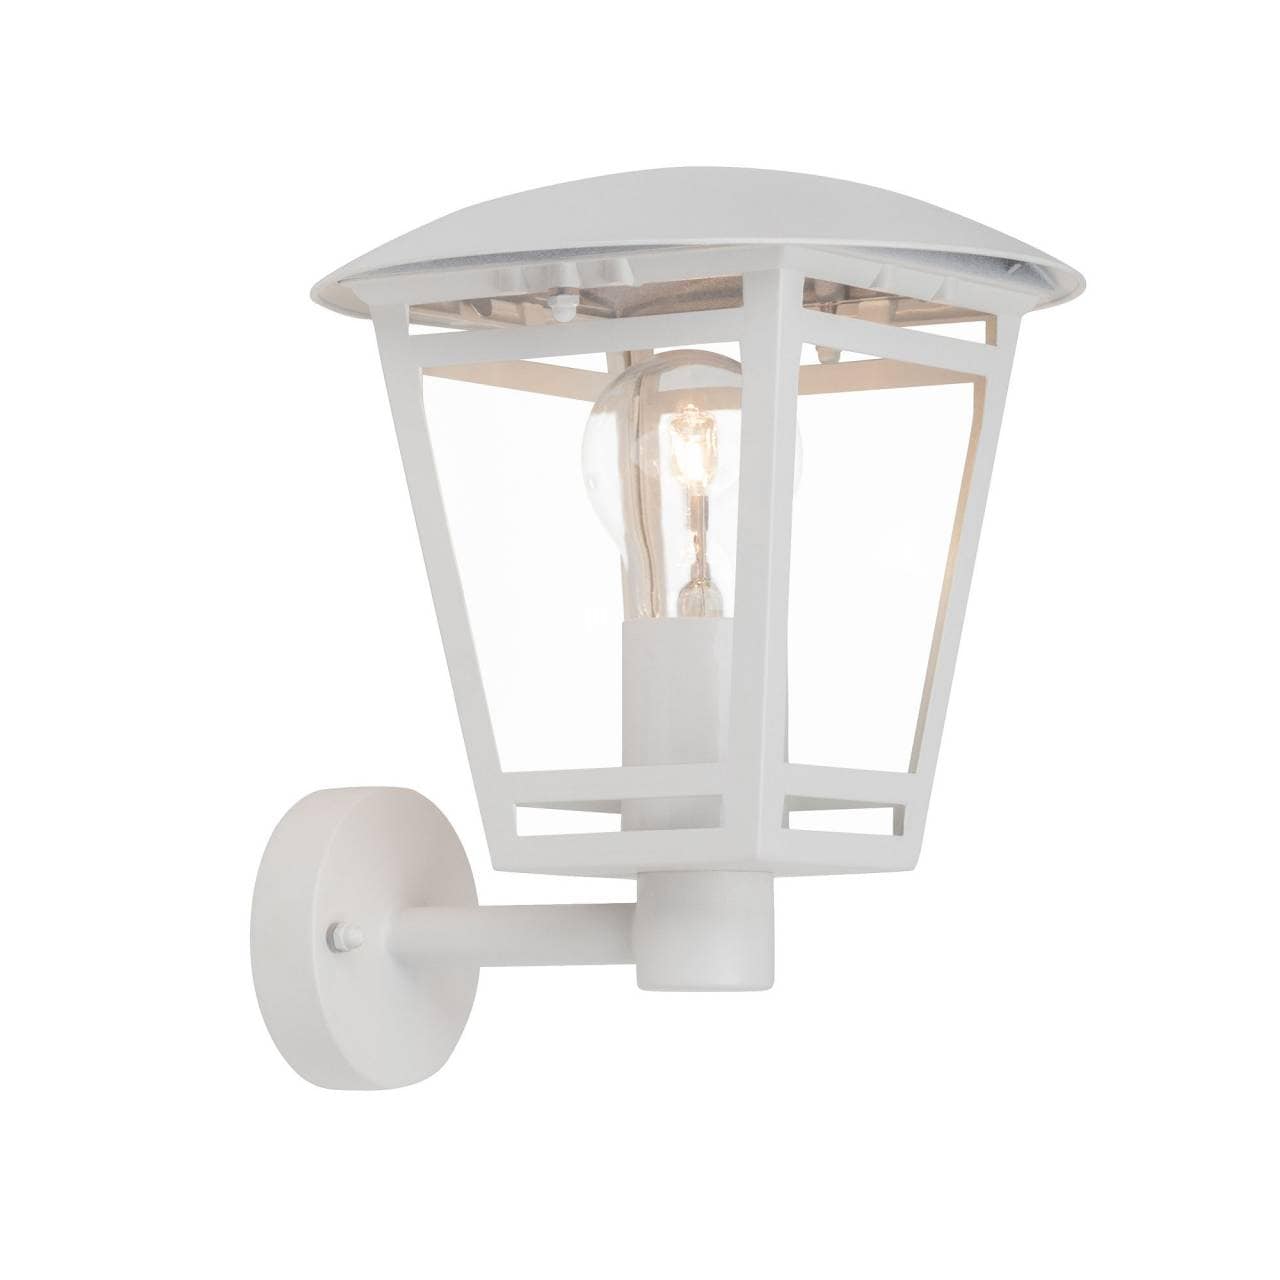 BRILLIANT Lampe Riley Außenwandleuchte stehend weiß   1x A60, E27, 40W, geeignet für Normallampen (nicht enthalten)   IP